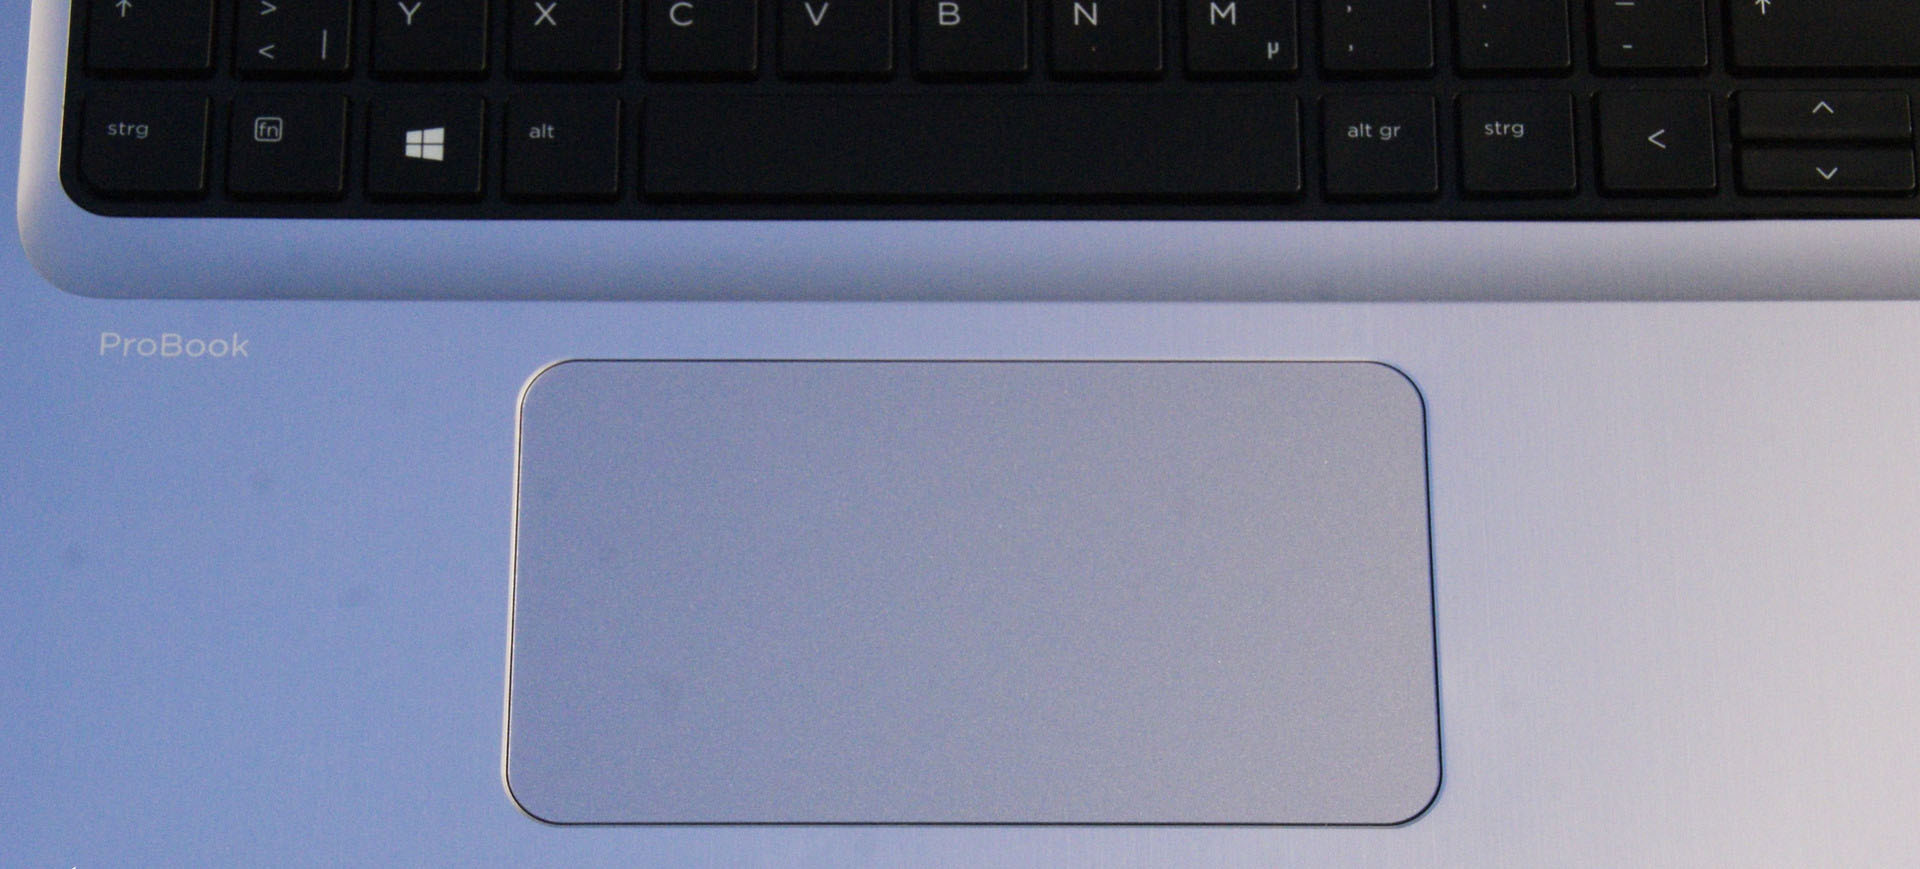 لپ تاپ ۱۵ اینچی اچ پی مدل ProBook 450 G4 - Q